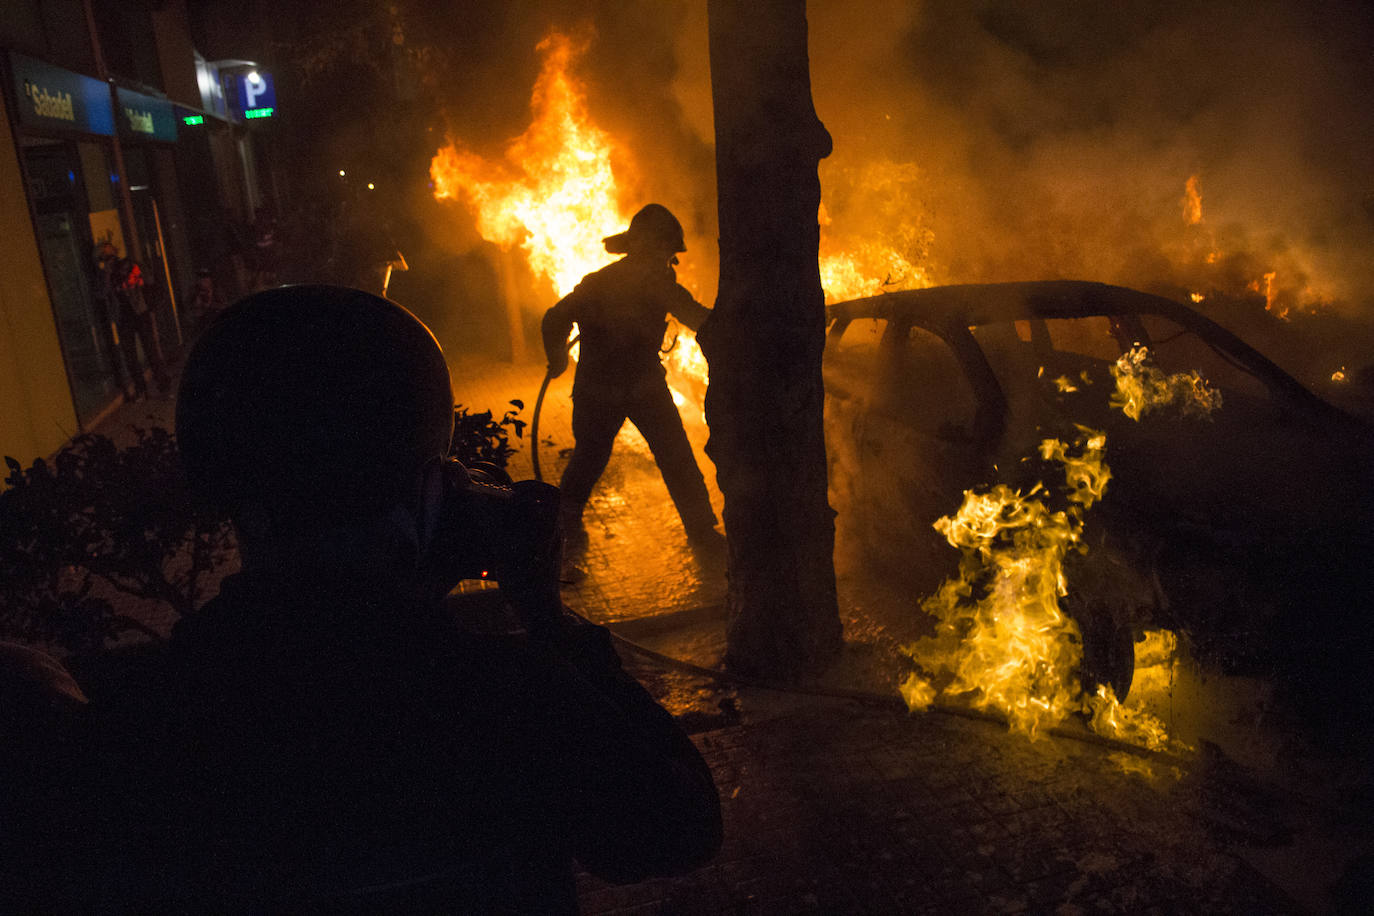 Iyán Rojo recogió con su cámara los altercados vividos en la noche del miércoles por las calles catalanas.